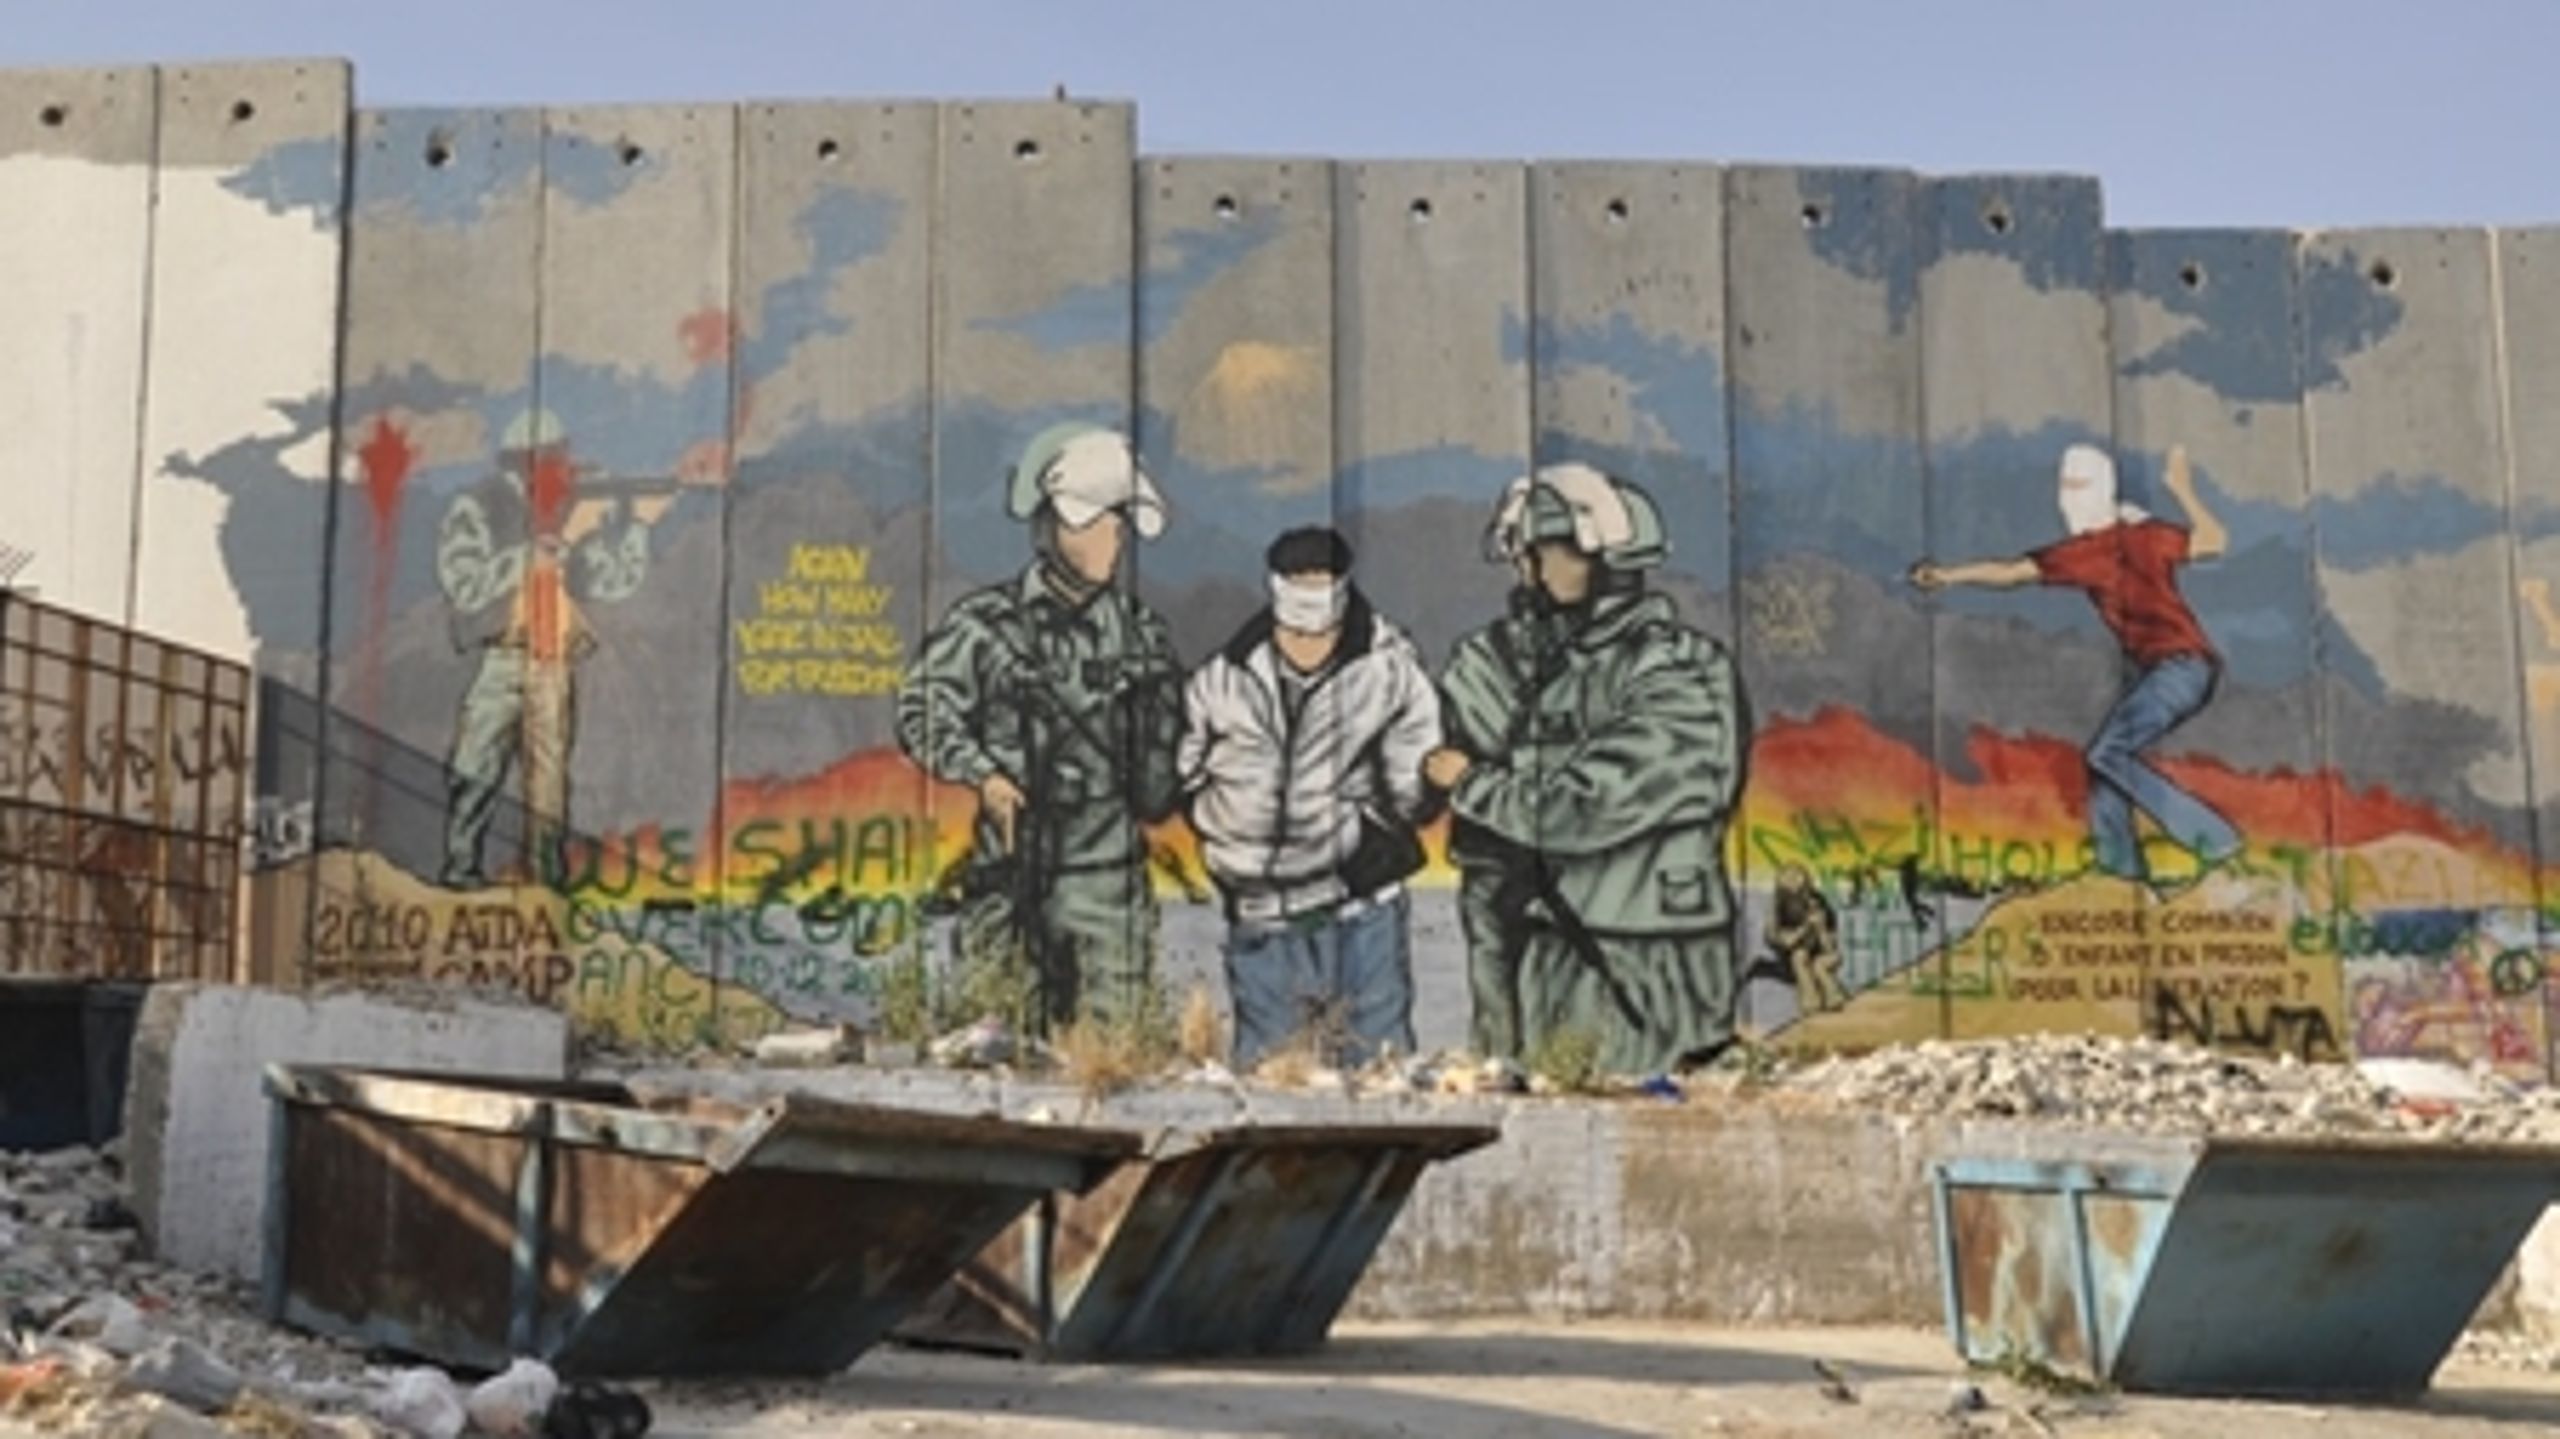 Støtten til Det Palæstinensiske Selvstyre er gradvist hævet, så den i 2014 er lagt op til at lande på 250 mio. kr. (Billedet: Muren mellem Israel og Palæstina).